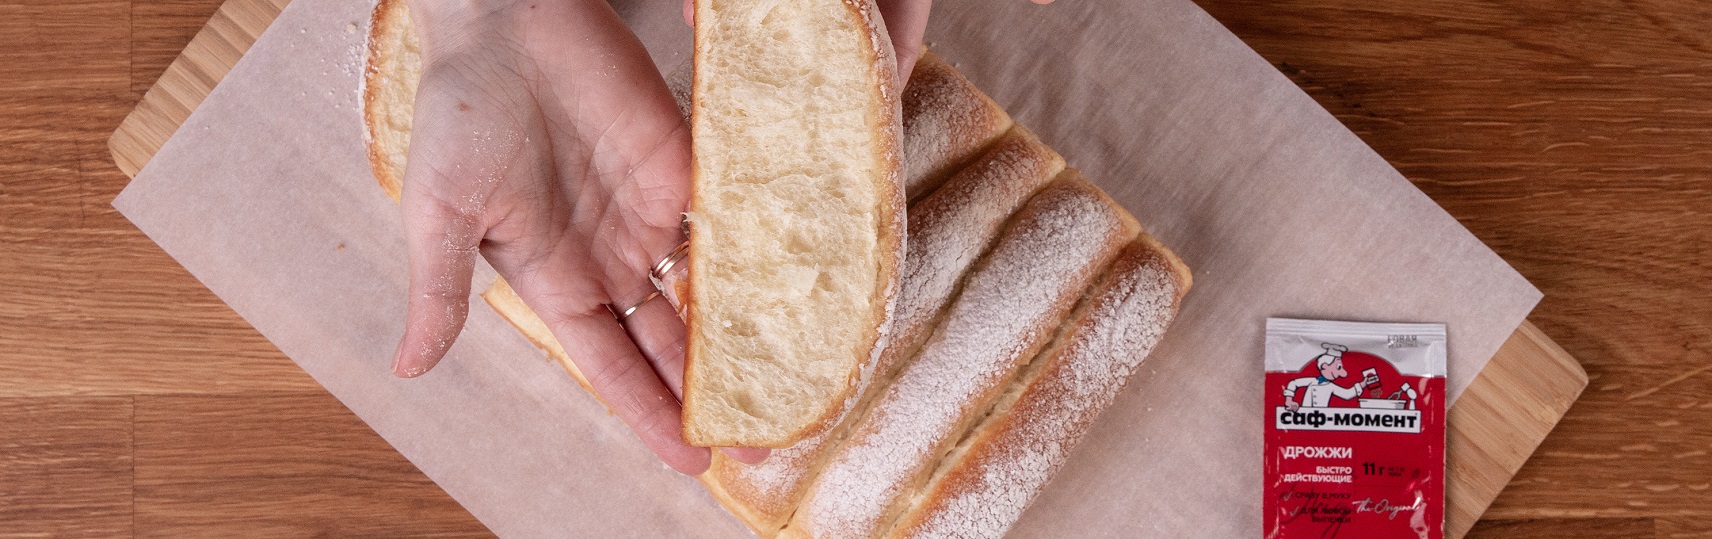 Виндзорский хлеб («Чайный хлеб Виндзоров»)